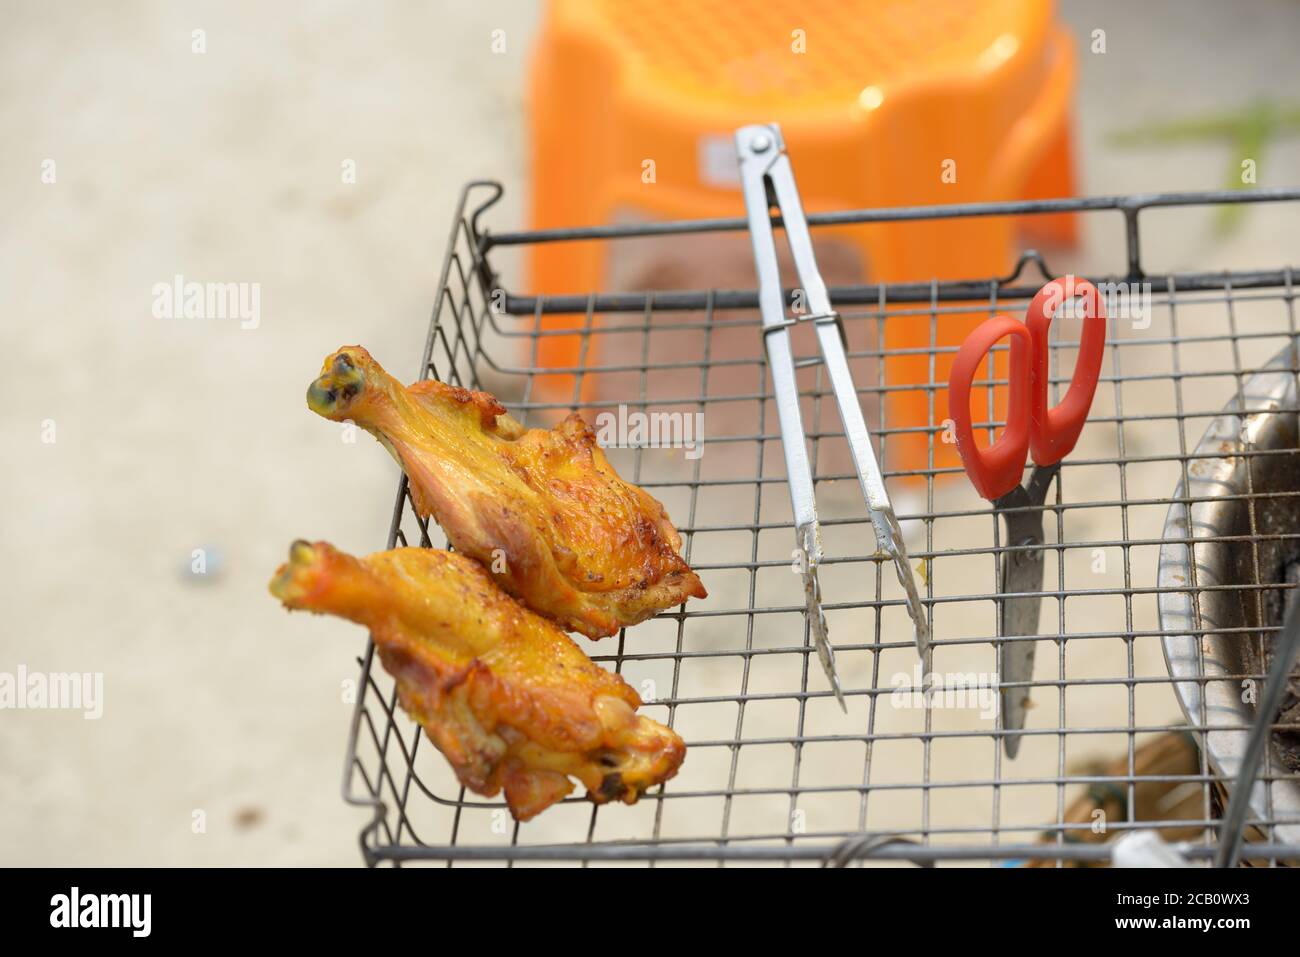 Portrait de poulet grillé fraîchement cuit à l'extérieur Banque D'Images